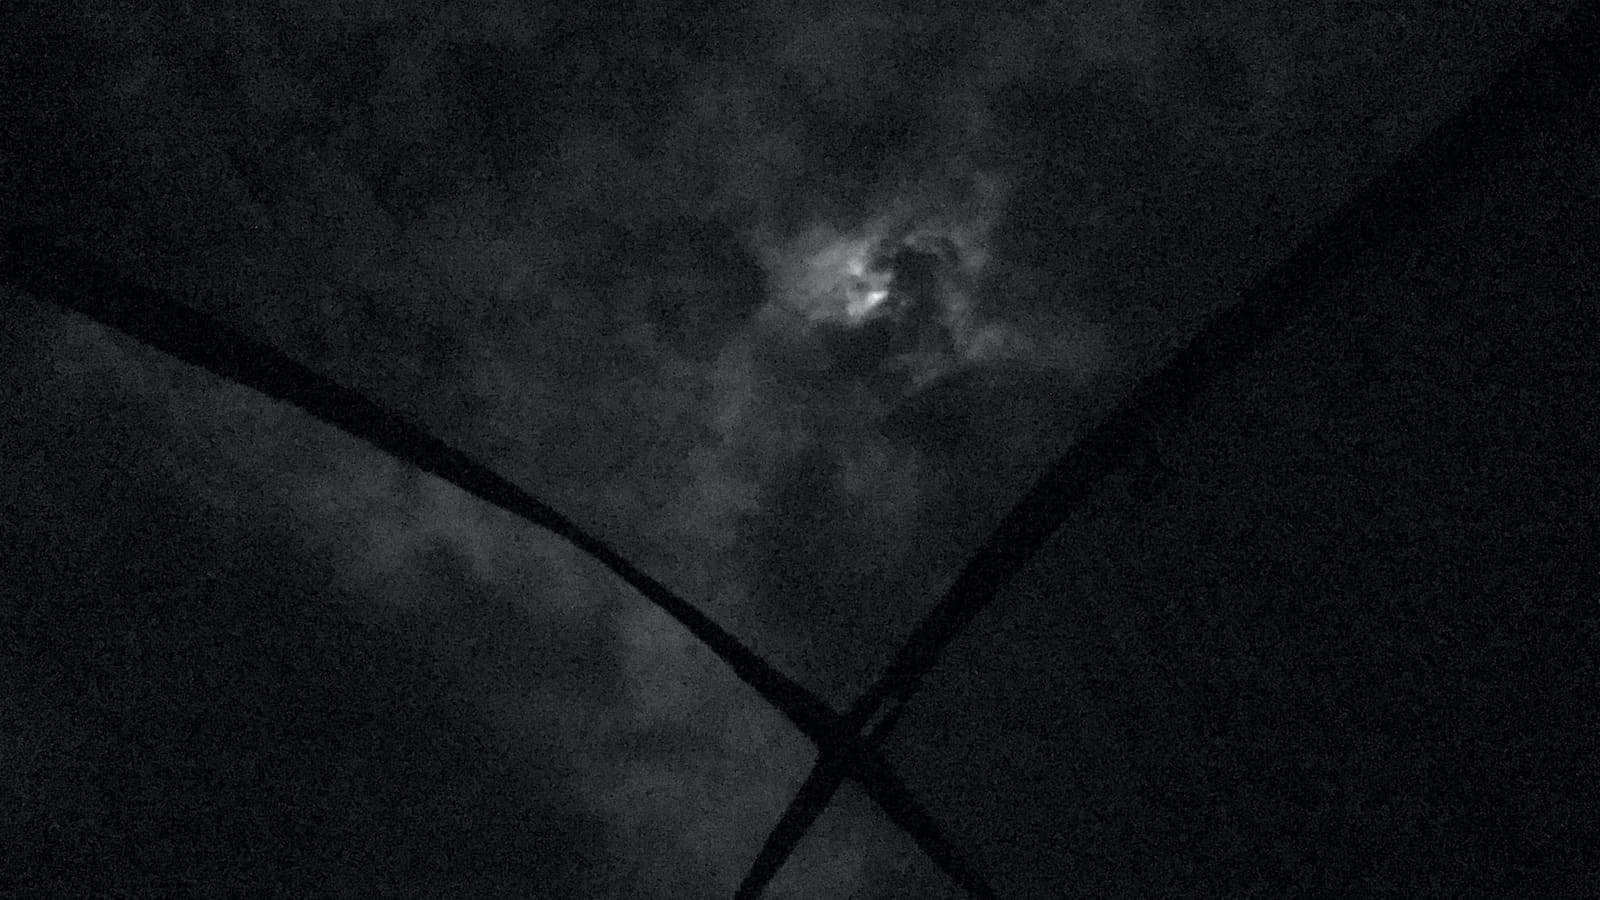 No centro, a lua no azimute entre nuvens em uma noite, vista através da tela no teto de uma barraca de camping, um pouco abaixo da lua, a estrutura da barra forma um X